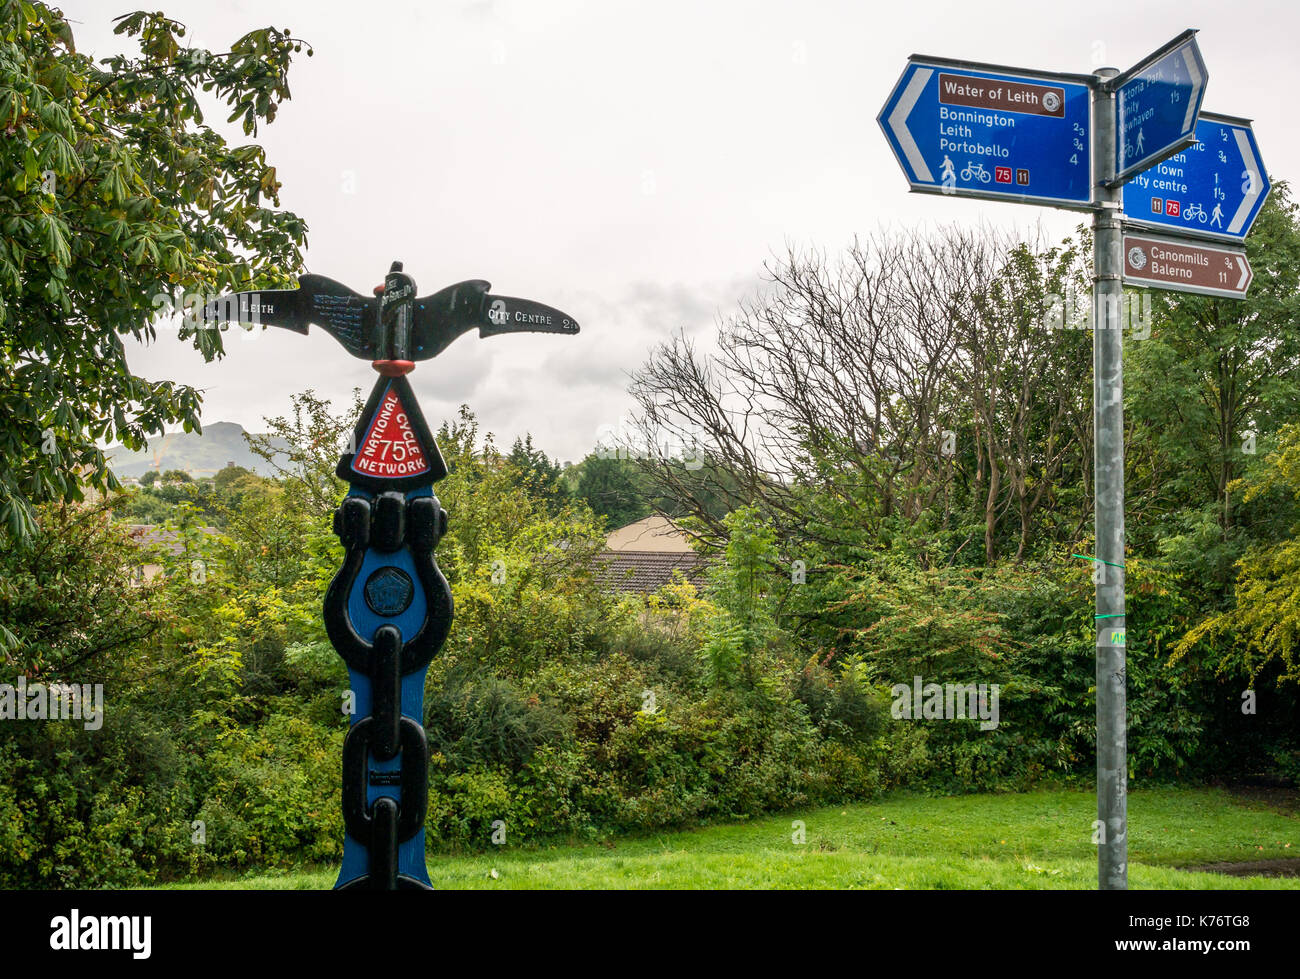 Cycle Route 75 Schild Richtungen auf Wasser des Leith Gehweg und Radweg, Stedfastgate, Warriston, Trinity, Edinburgh, Schottland, auf feuchten regnerischen Tag Stockfoto